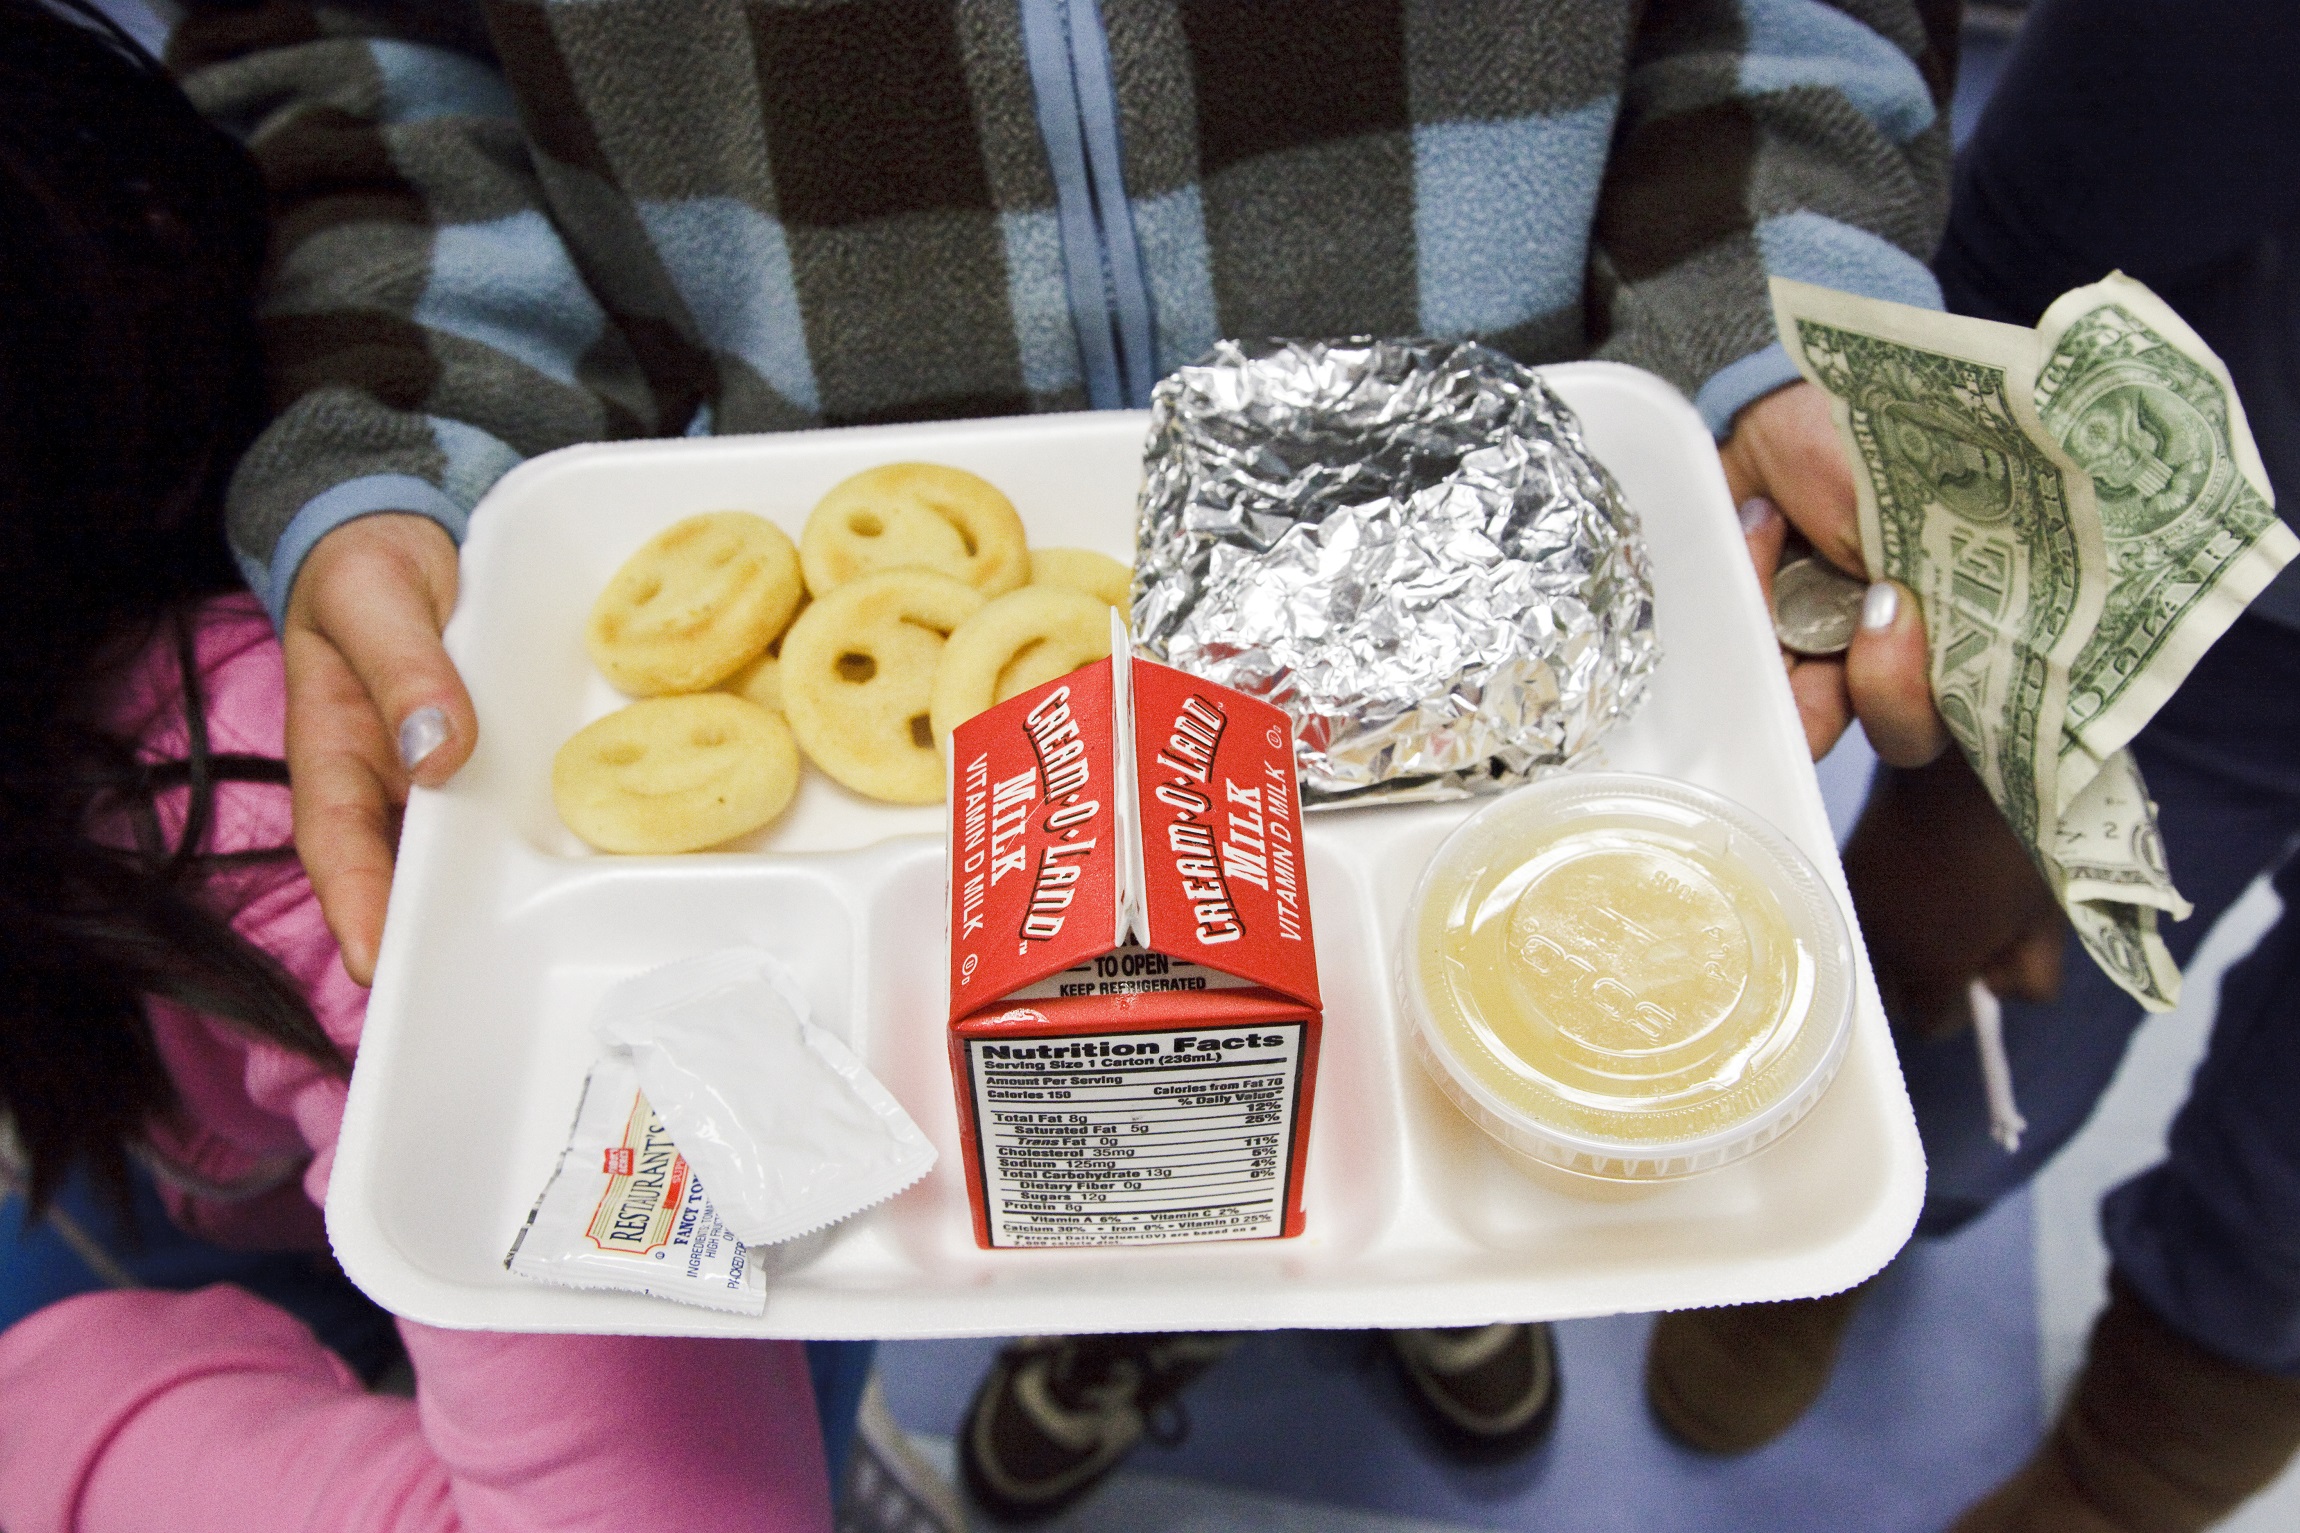 La législature du Nevada avance un projet de loi visant à prolonger la gratuité des repas scolaires jusqu'en 2025